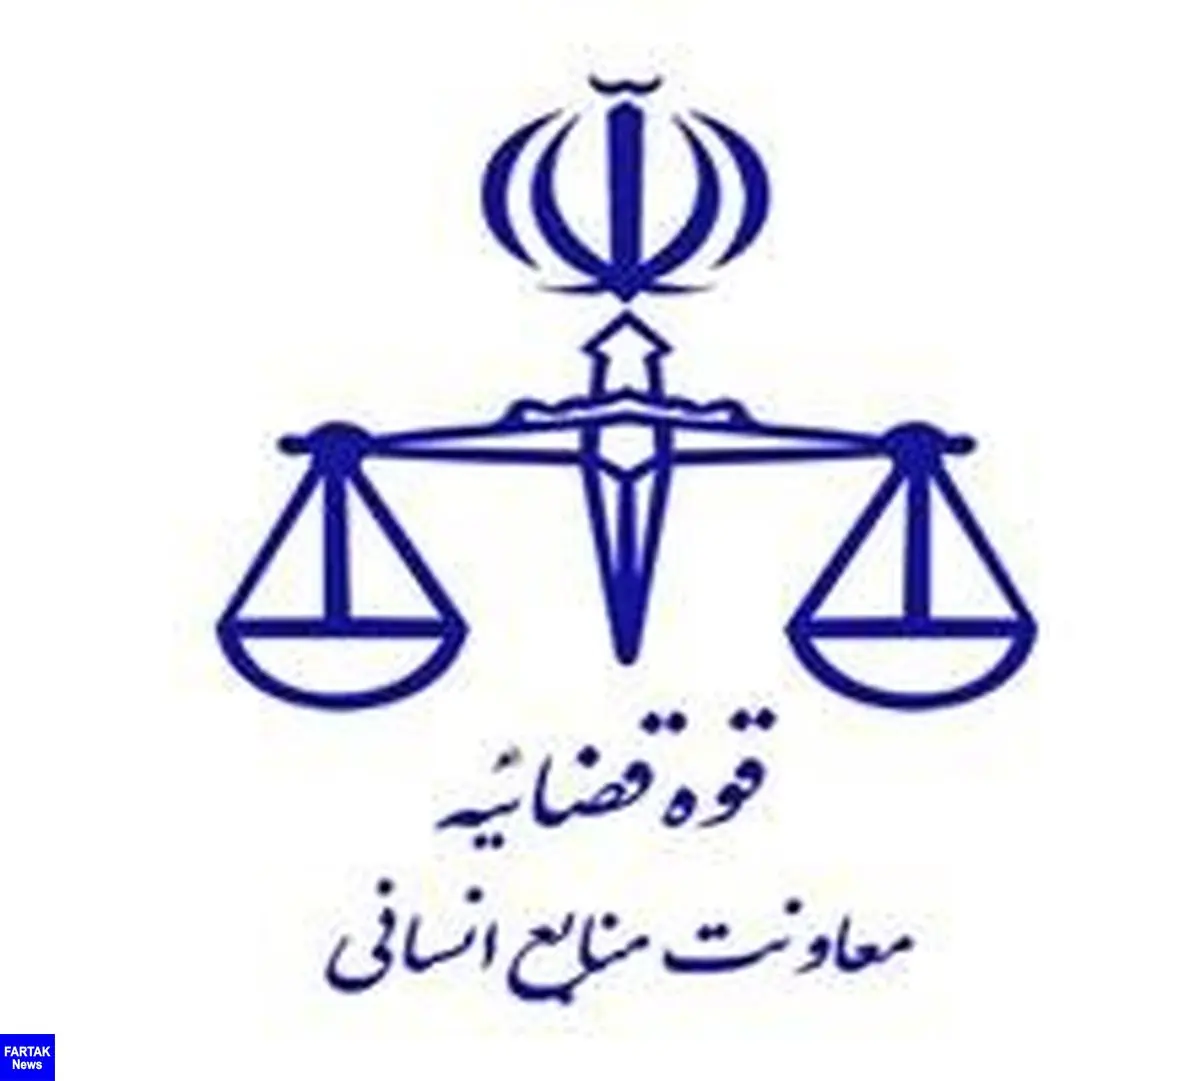 
اعلام زمان ثبت‌نام متقاضیان امریه سربازی در قوه قضاییه؛ اعزامی اسفند ماه
